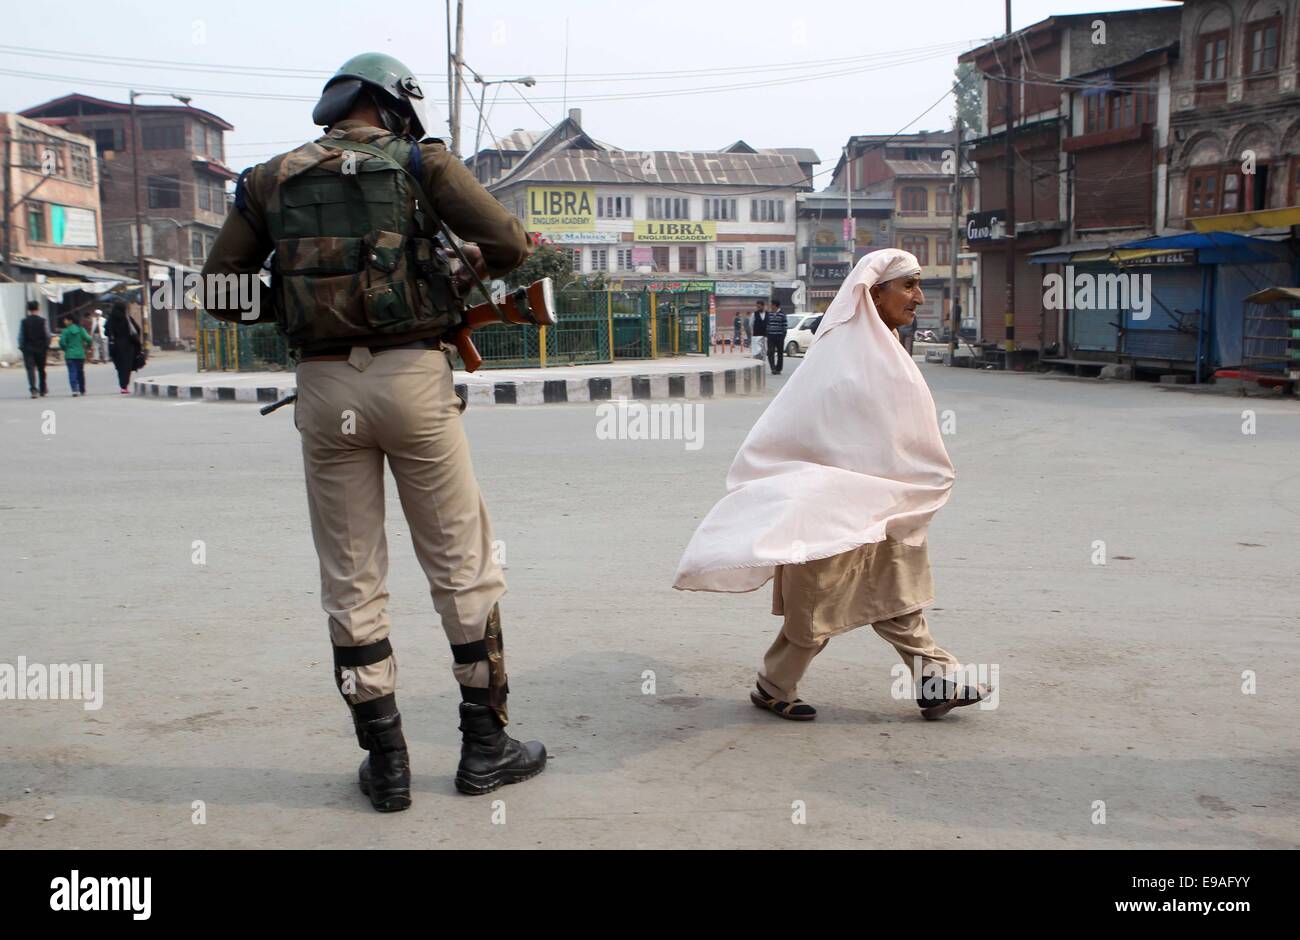 Srinagar, en la Cachemira india. 23 Oct, 2014. Un soldado paramilitar indio custodia como una mujer musulmana de Cachemira camina pasado durante la huelga contra el Primer Ministro de la India, Narendra Modi la visita a Srinagar, capital de verano de la Cachemira india, el 23 de octubre de 2014. Modi llegó en Srinagar el jueves para celebrar el festival hindú de luces con las personas afectadas por las inundaciones. Los grupos separatistas de Cachemira han convocado una huelga general y protestas contra la visita del Modi. Crédito: Javed Dar/Xinhua/Alamy Live News Foto de stock